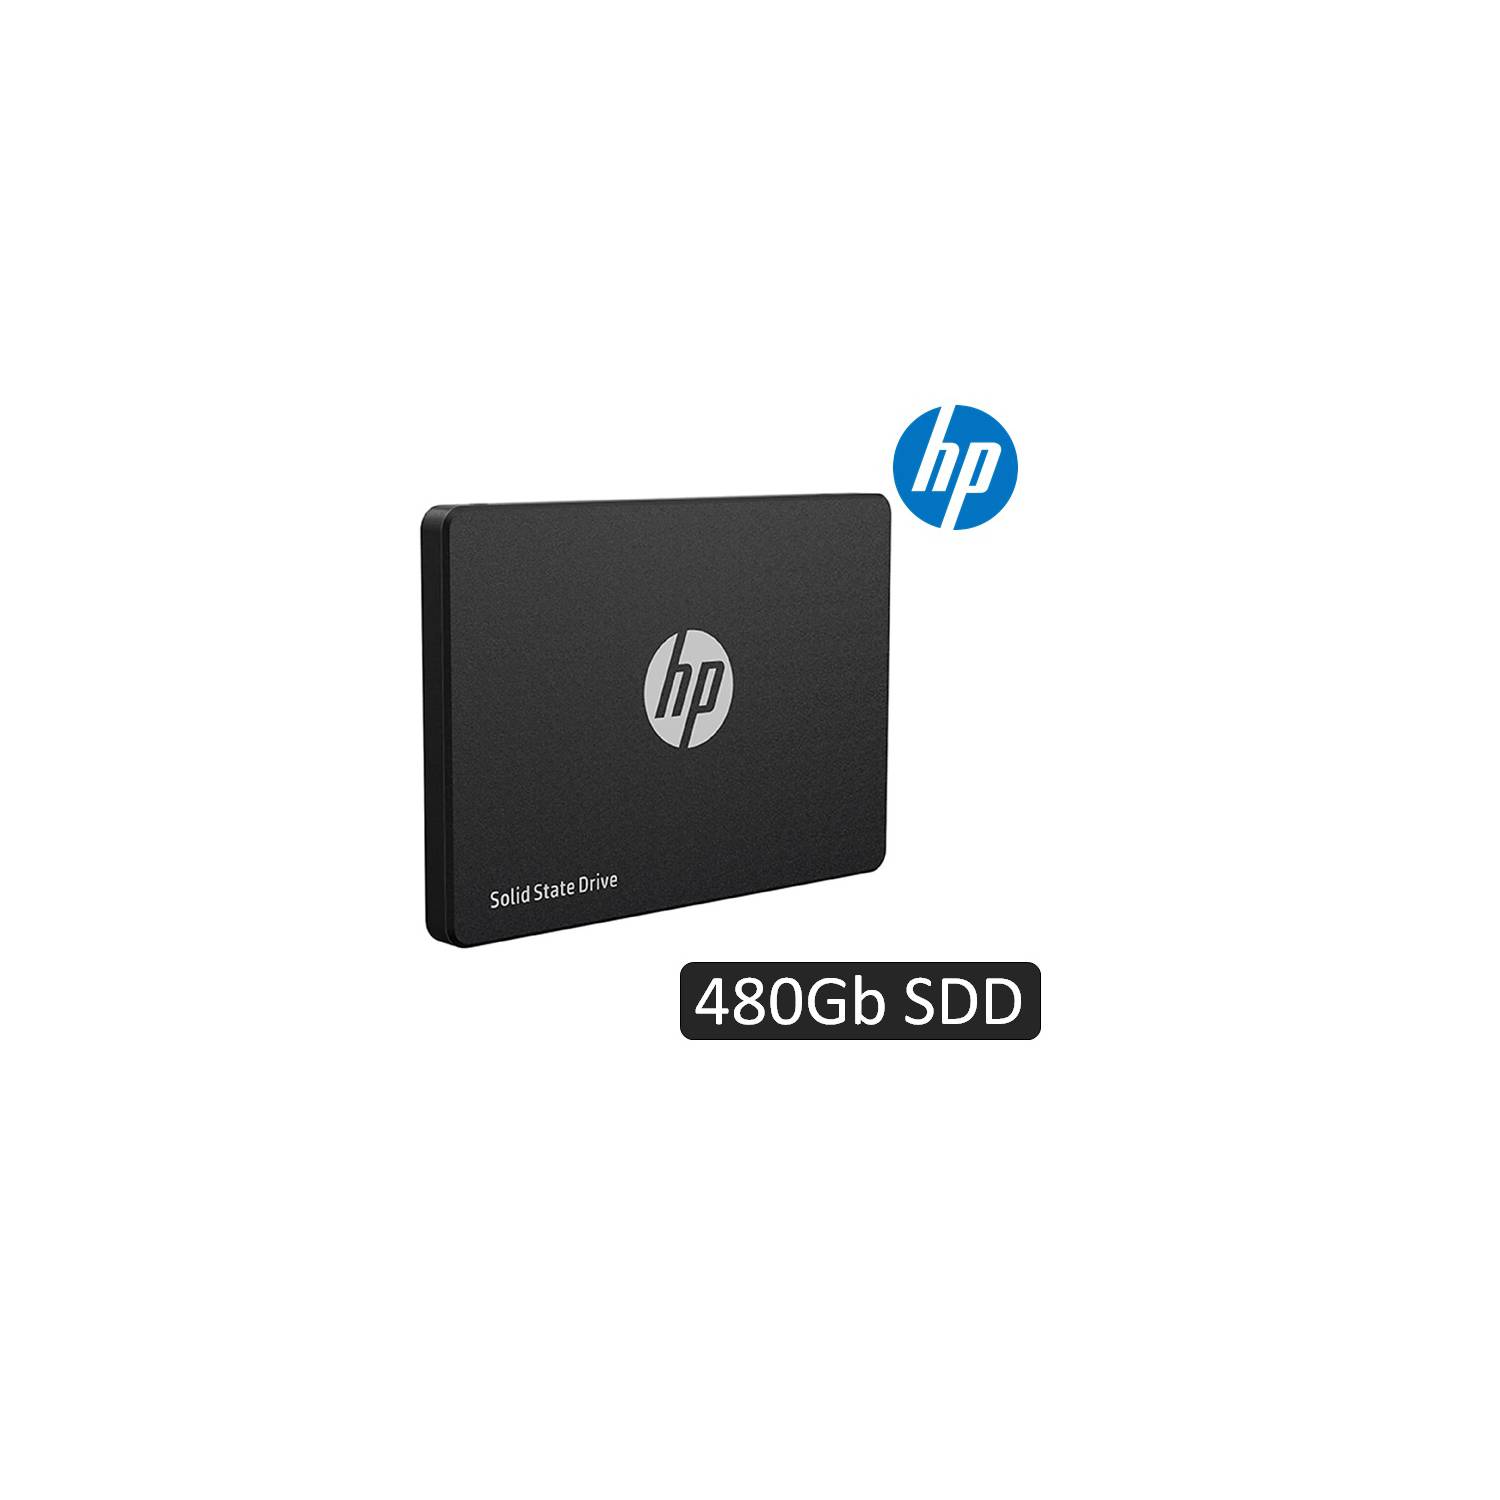 Disco Duro Interno HP SSD S650 240GB – DATAFLEX